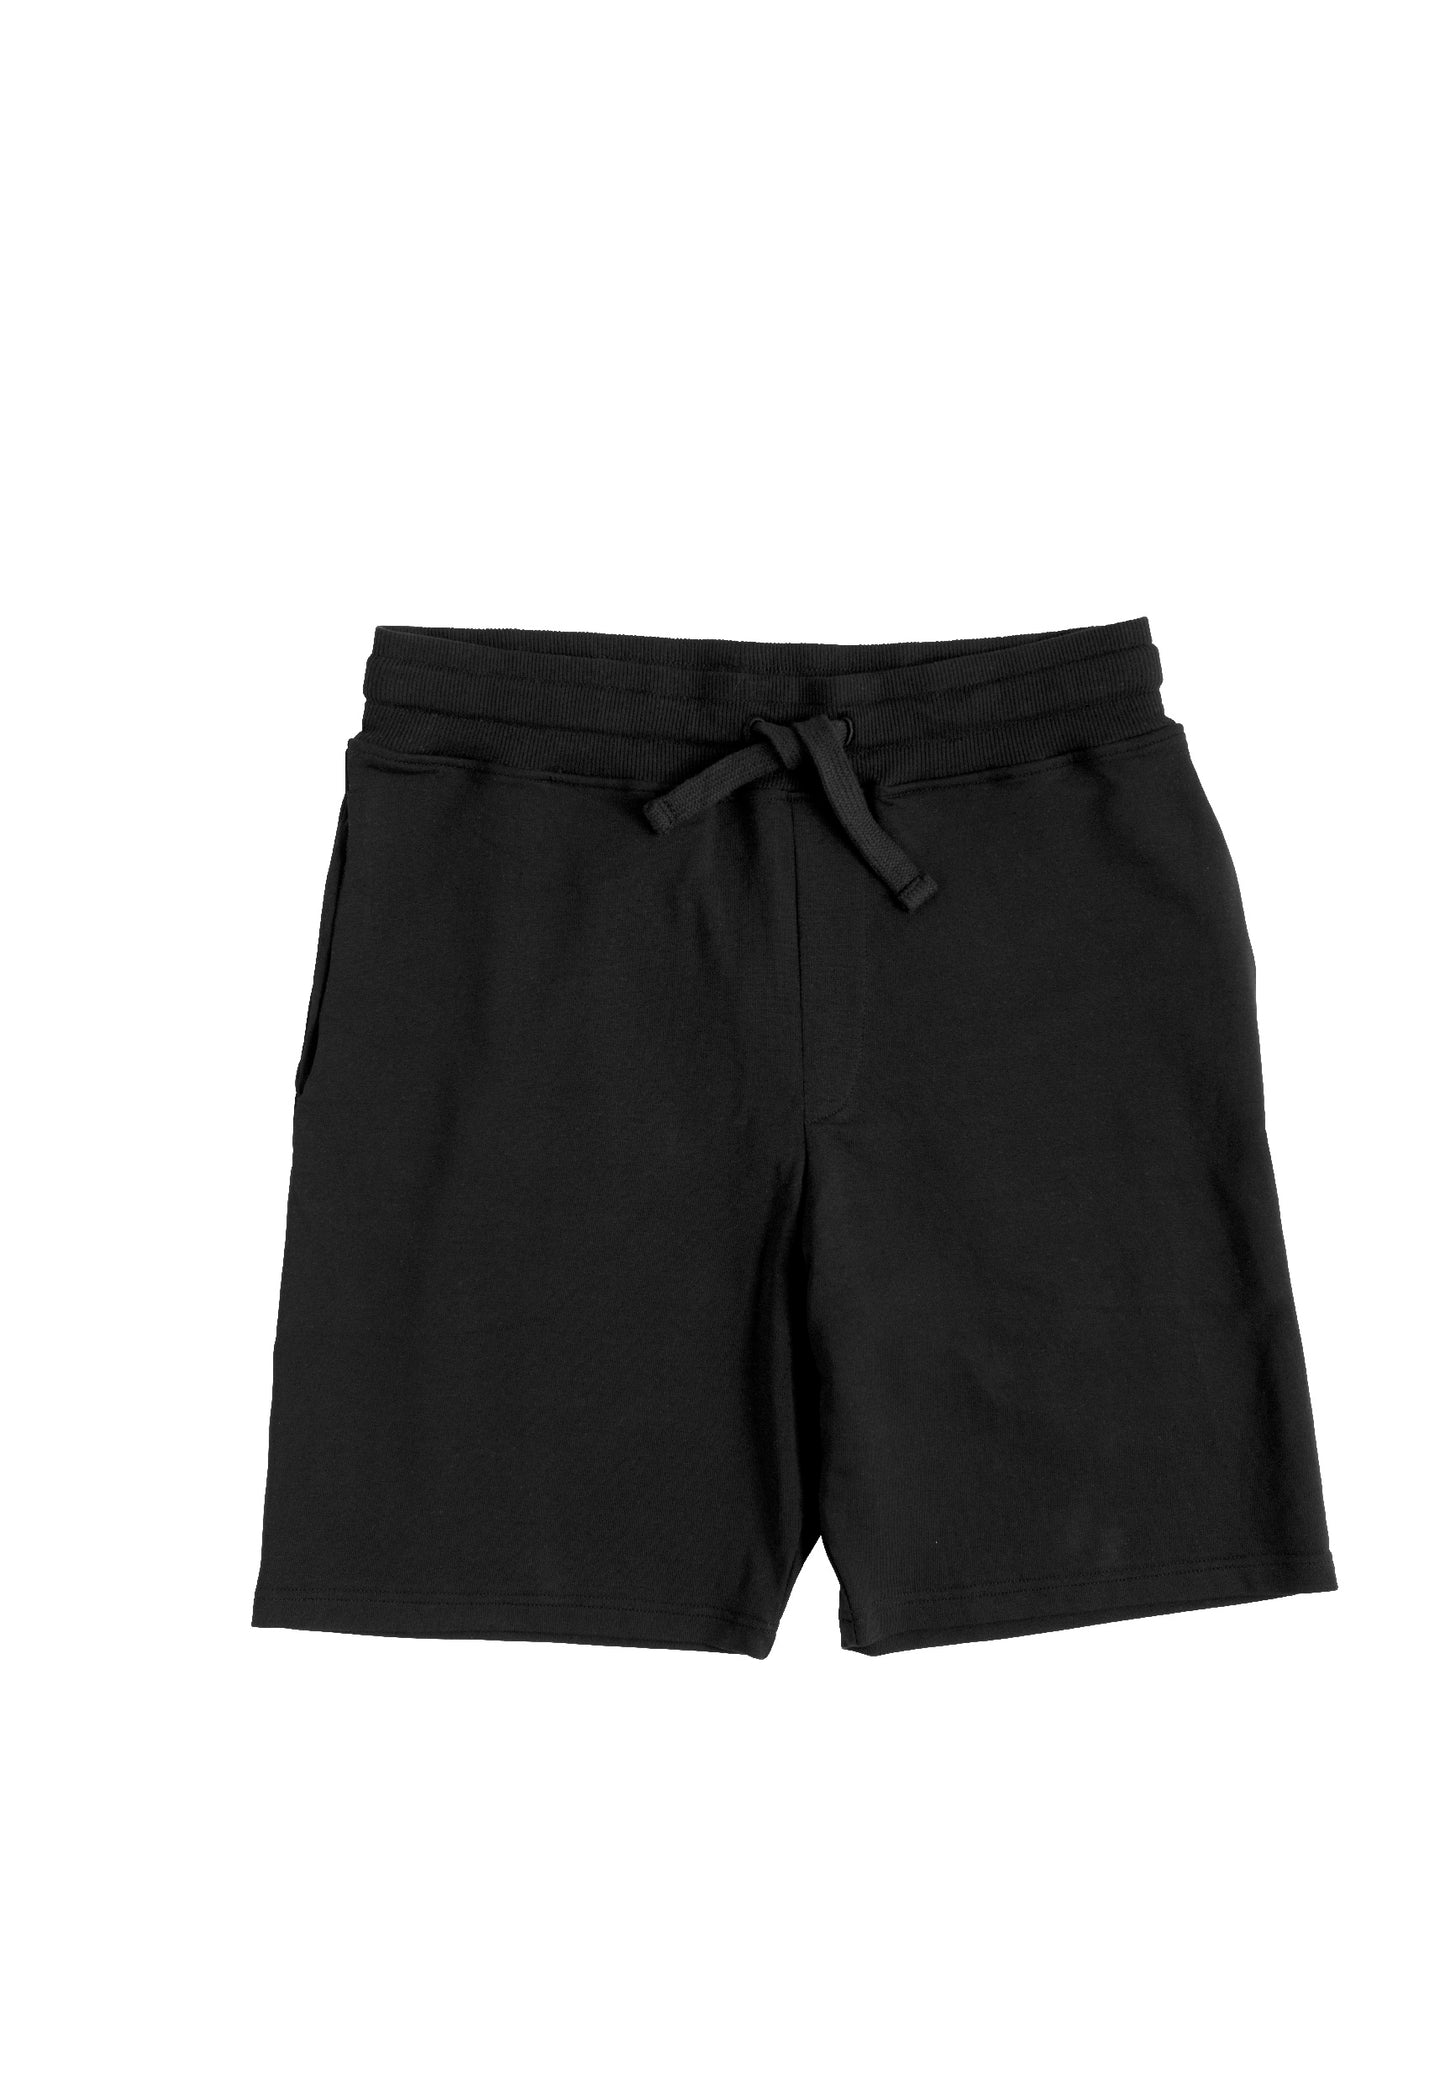 Black Shorts Herren